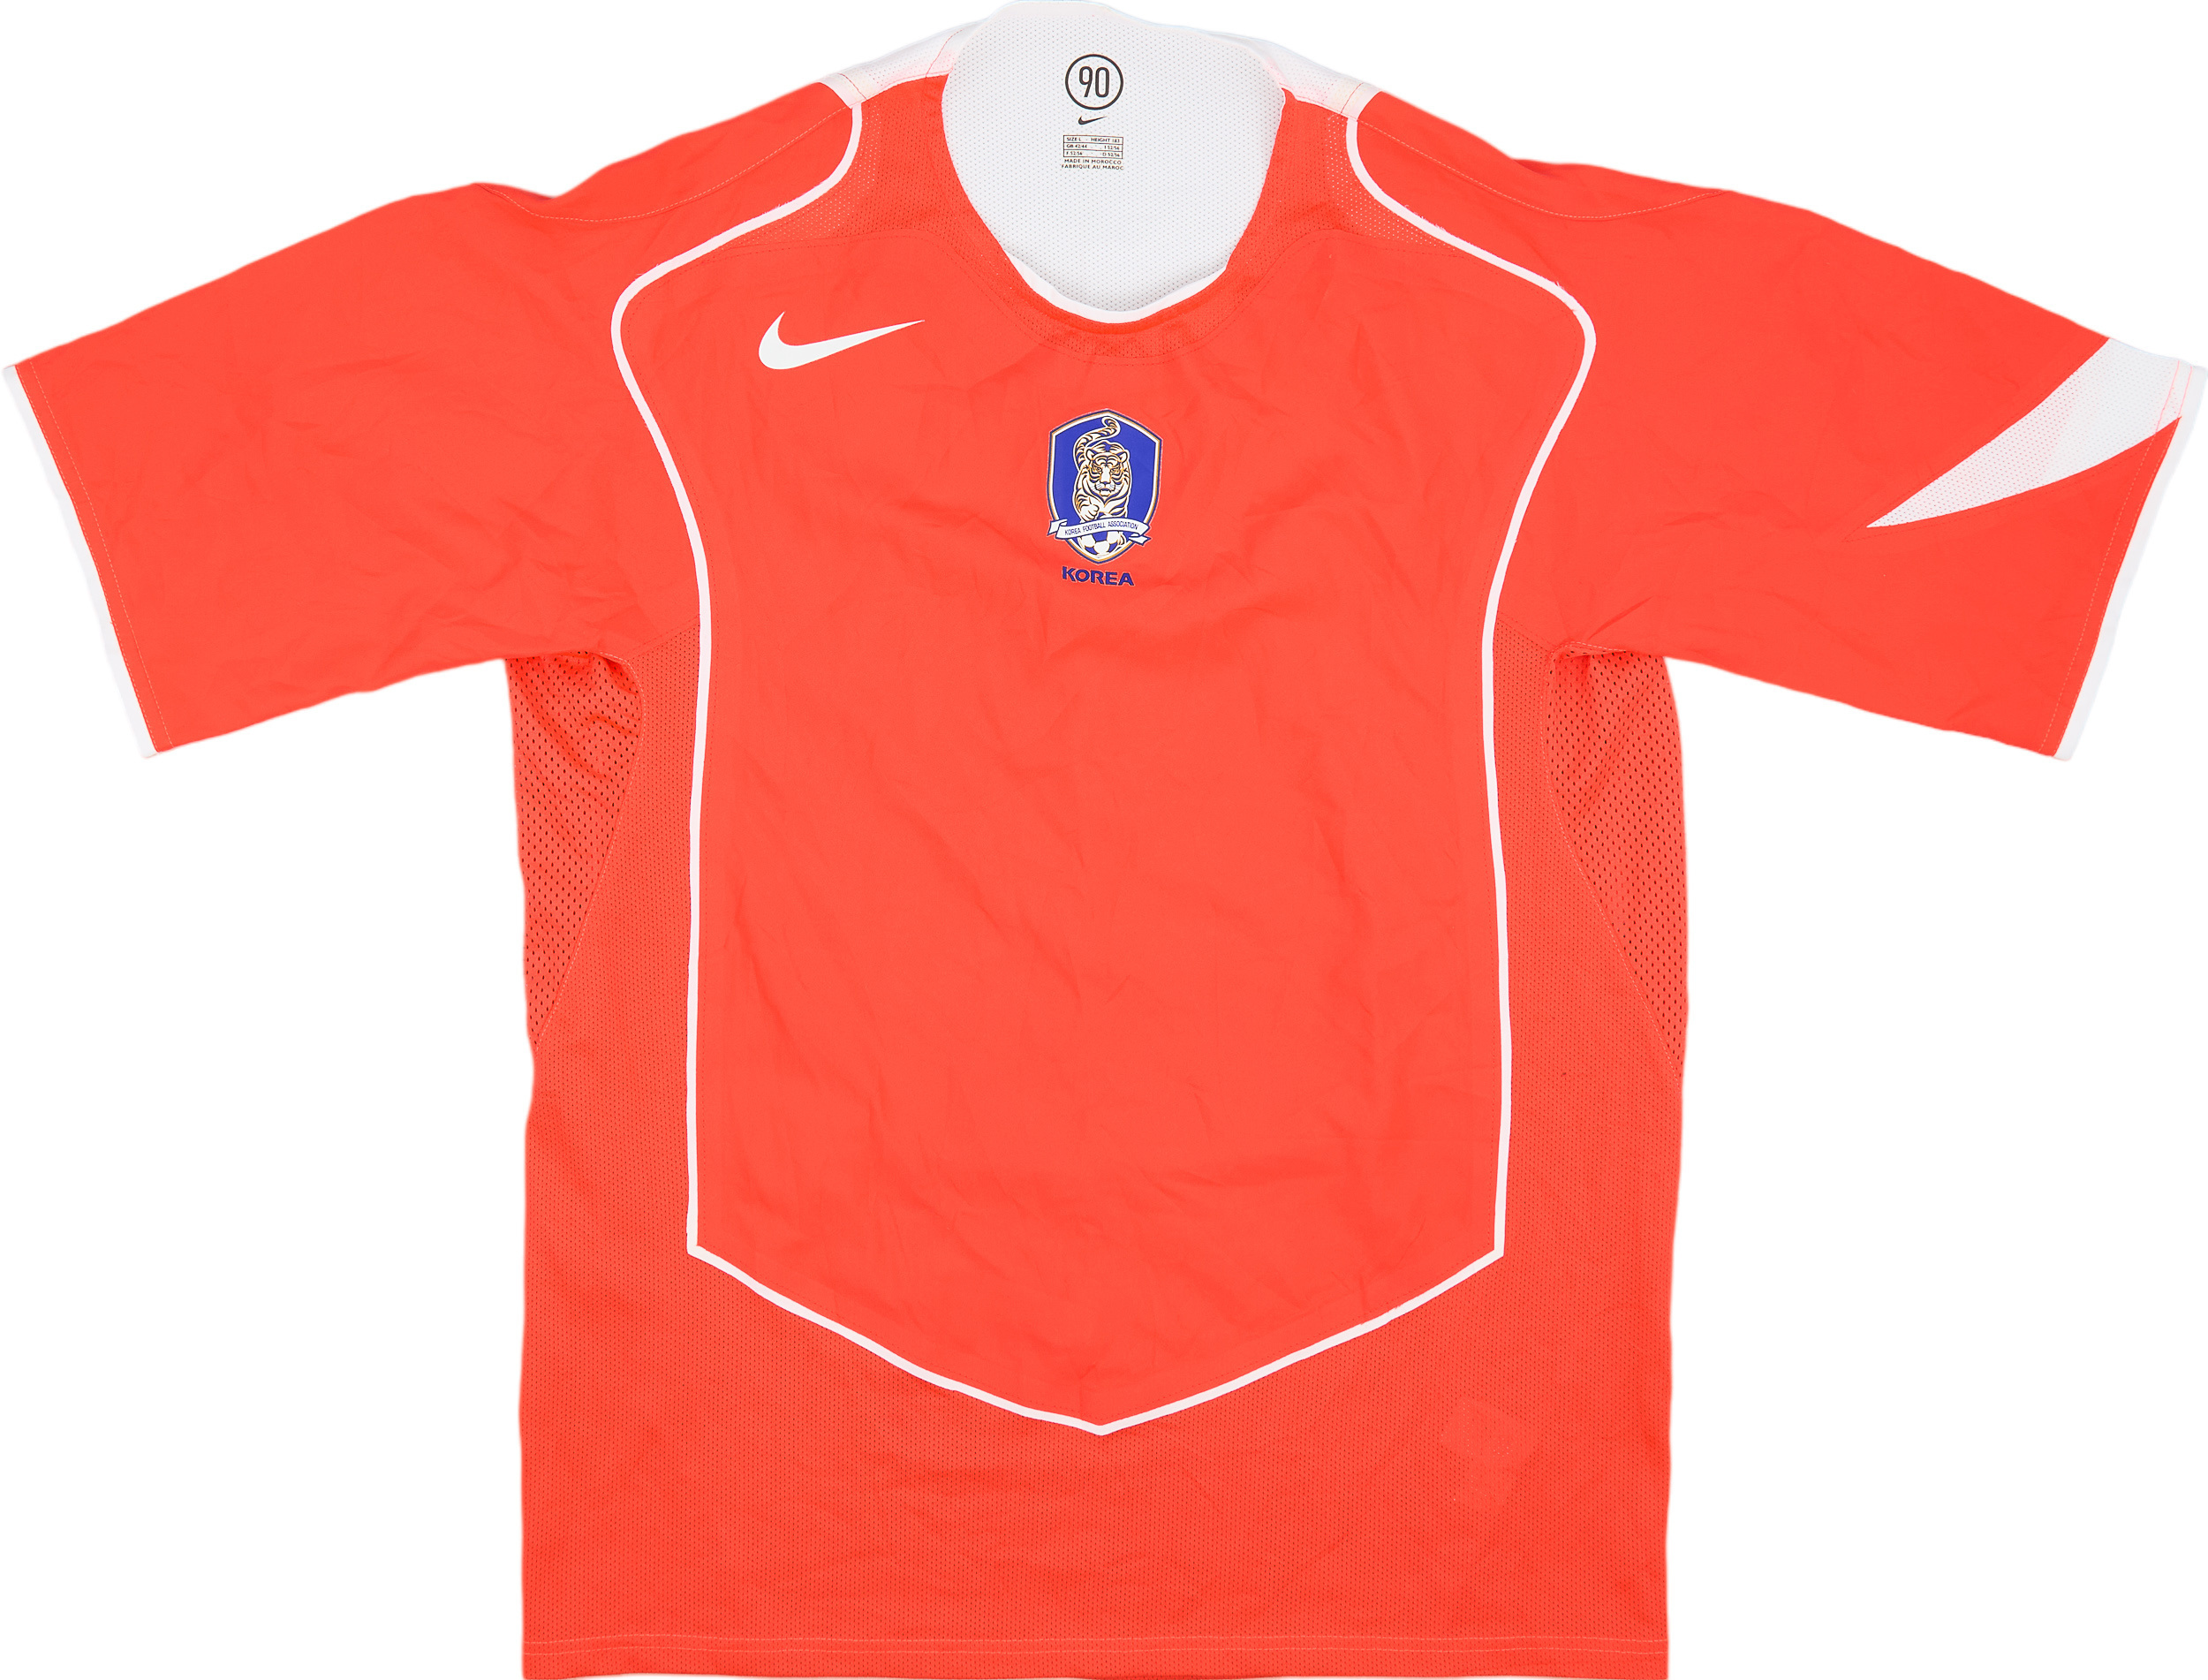 2004-06 South Korea Player Issue Home Shirt - 9/10 - ()